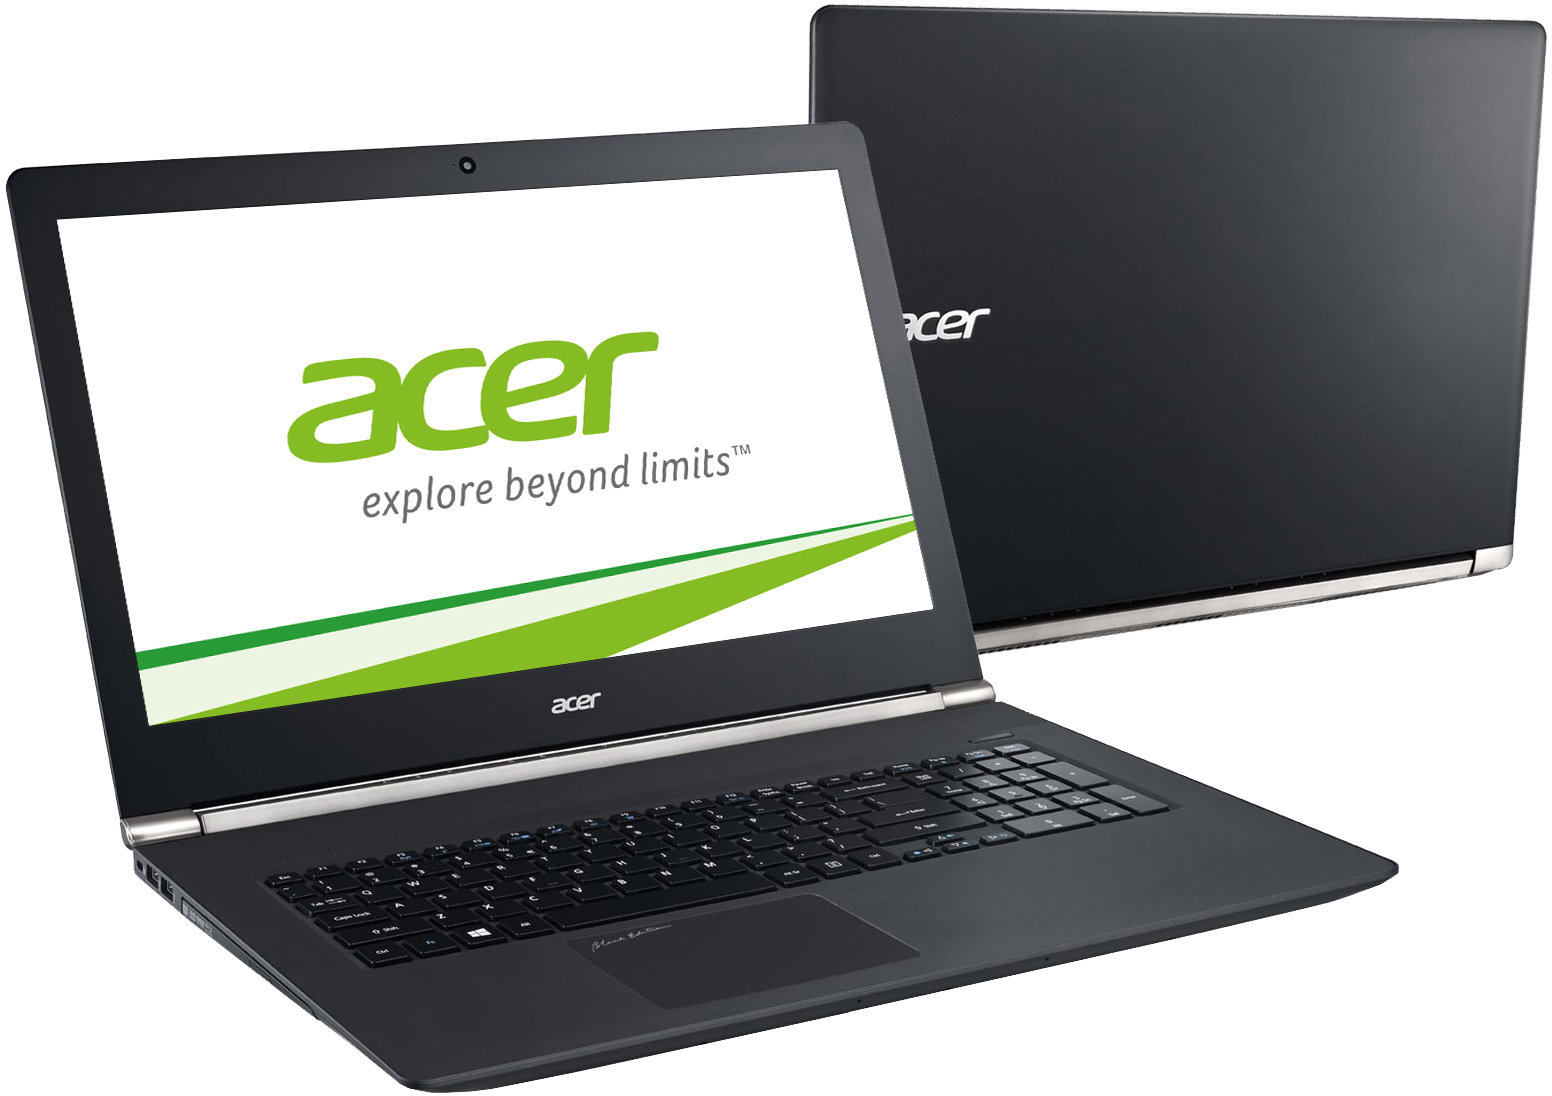 Aspire москва. Acer Aspire v17 Nitro. Acer Nitro 17. Acer explore Beyond limits ноутбук. Acer 791.